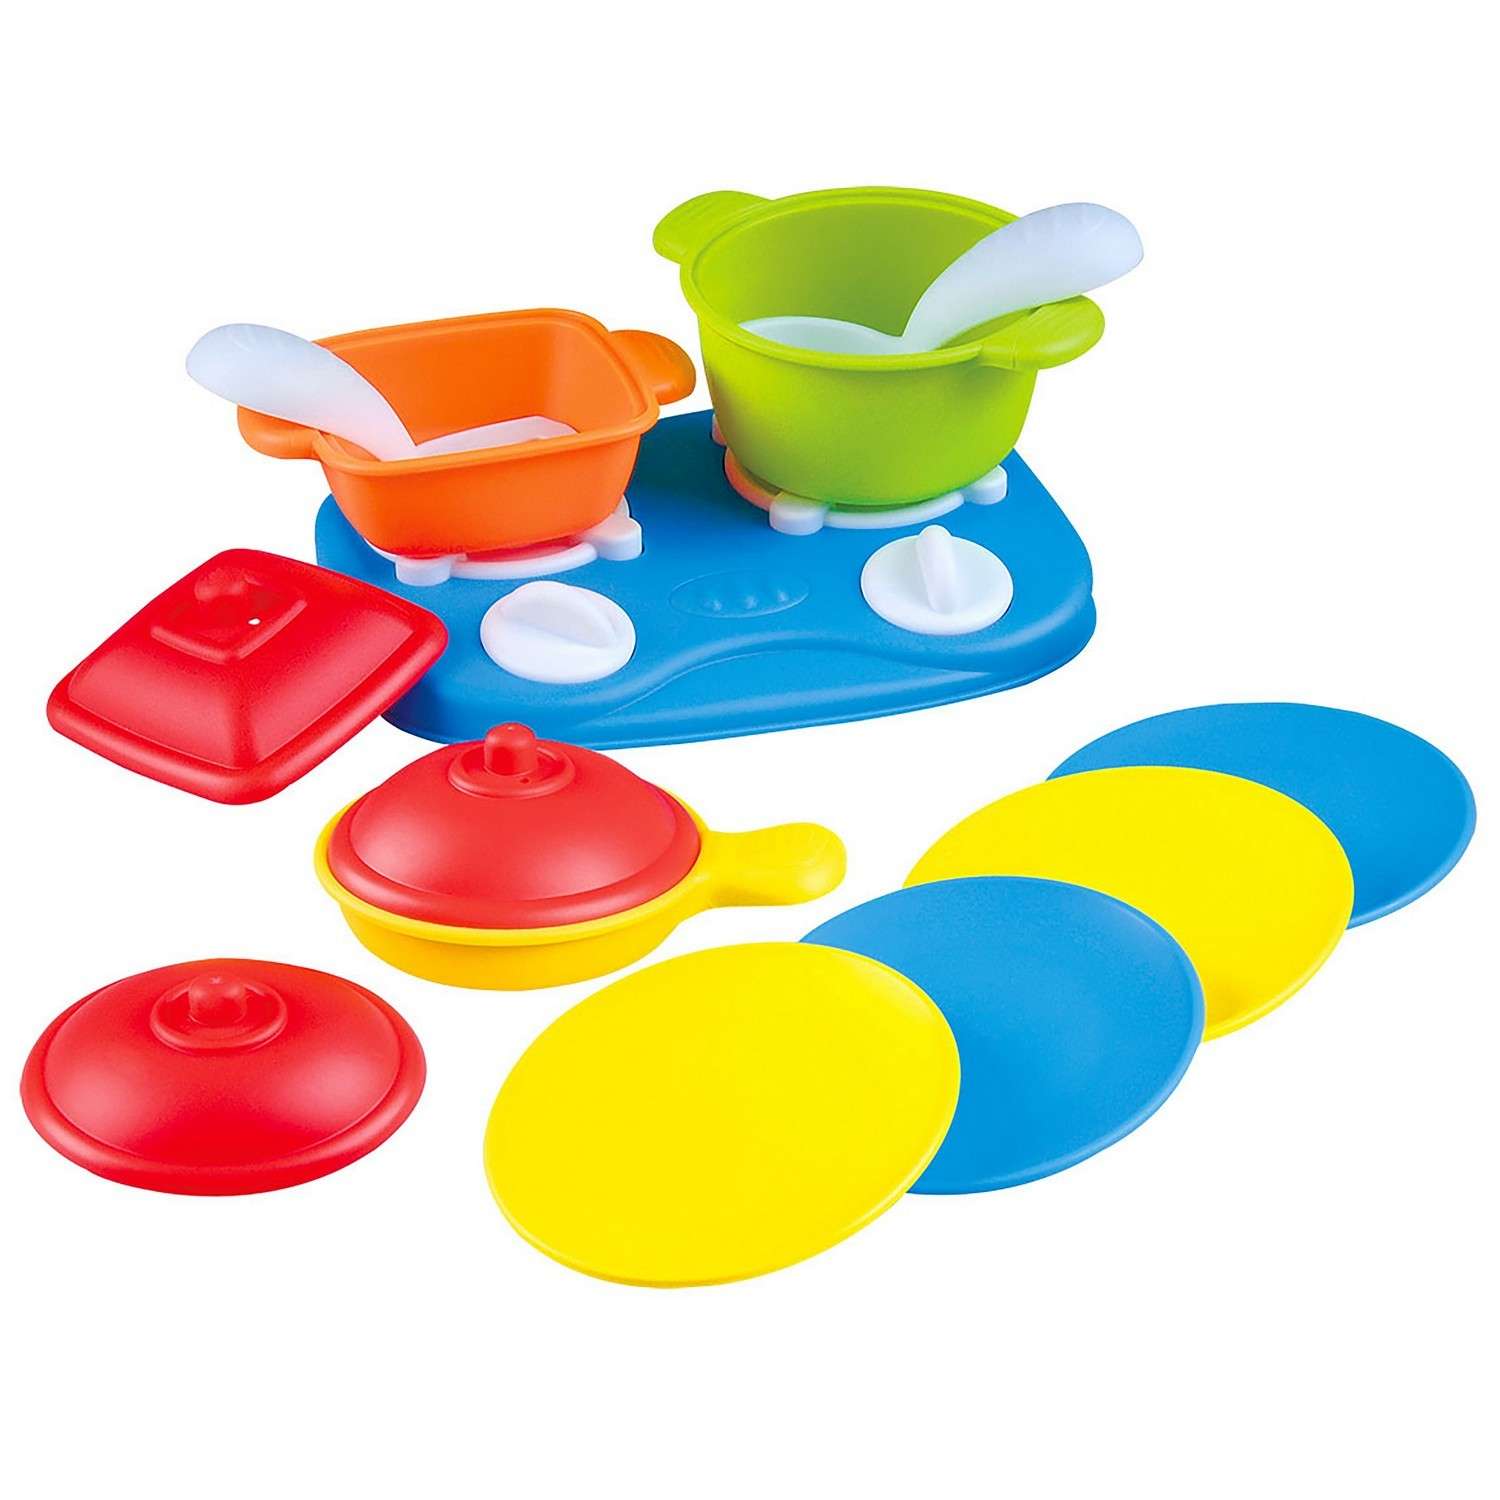 Набор игровой Playgo Плита с посудой 13 предметов - фото 1